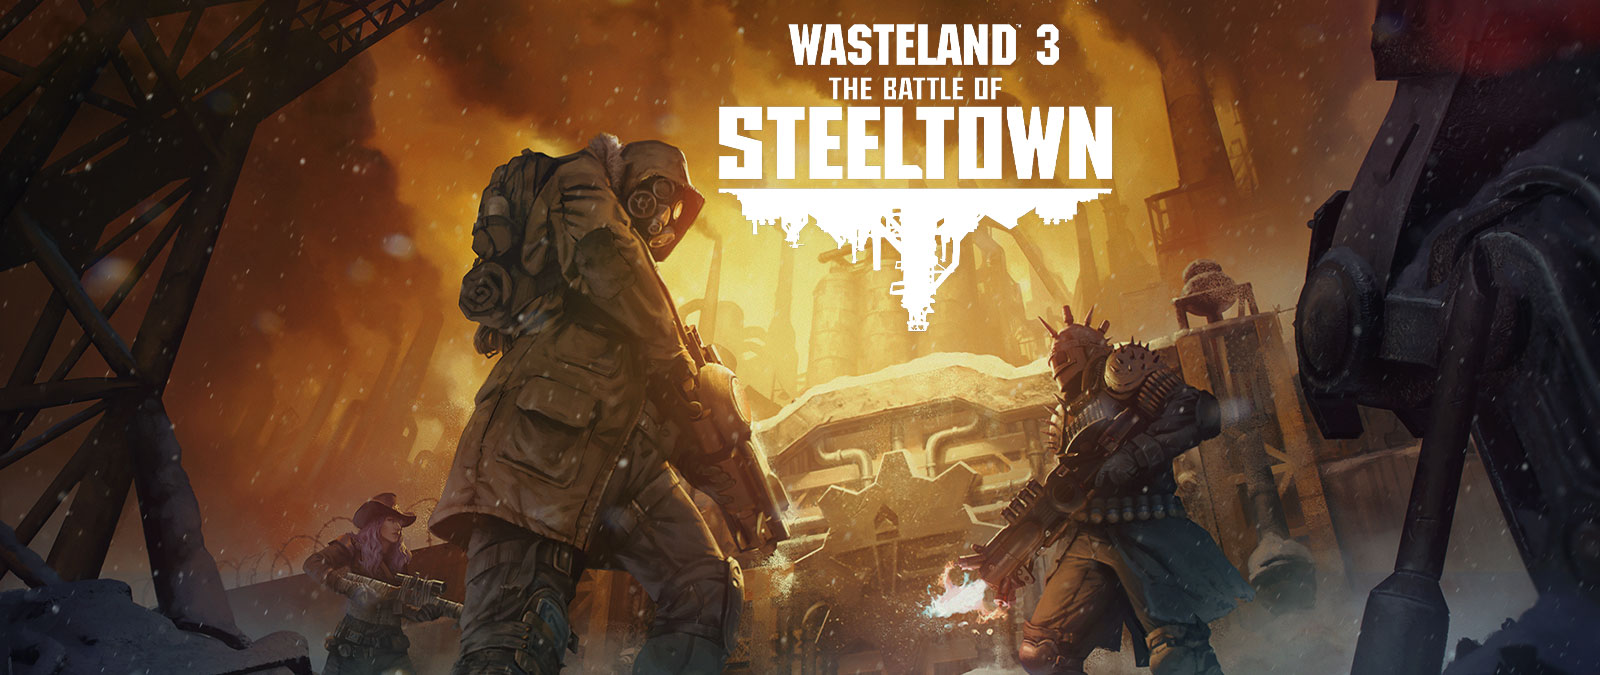 Wasteland 3: The Battle of Steeltown. Drie personages met wapens en bepantsering voor een deur met een industriële achtergrond